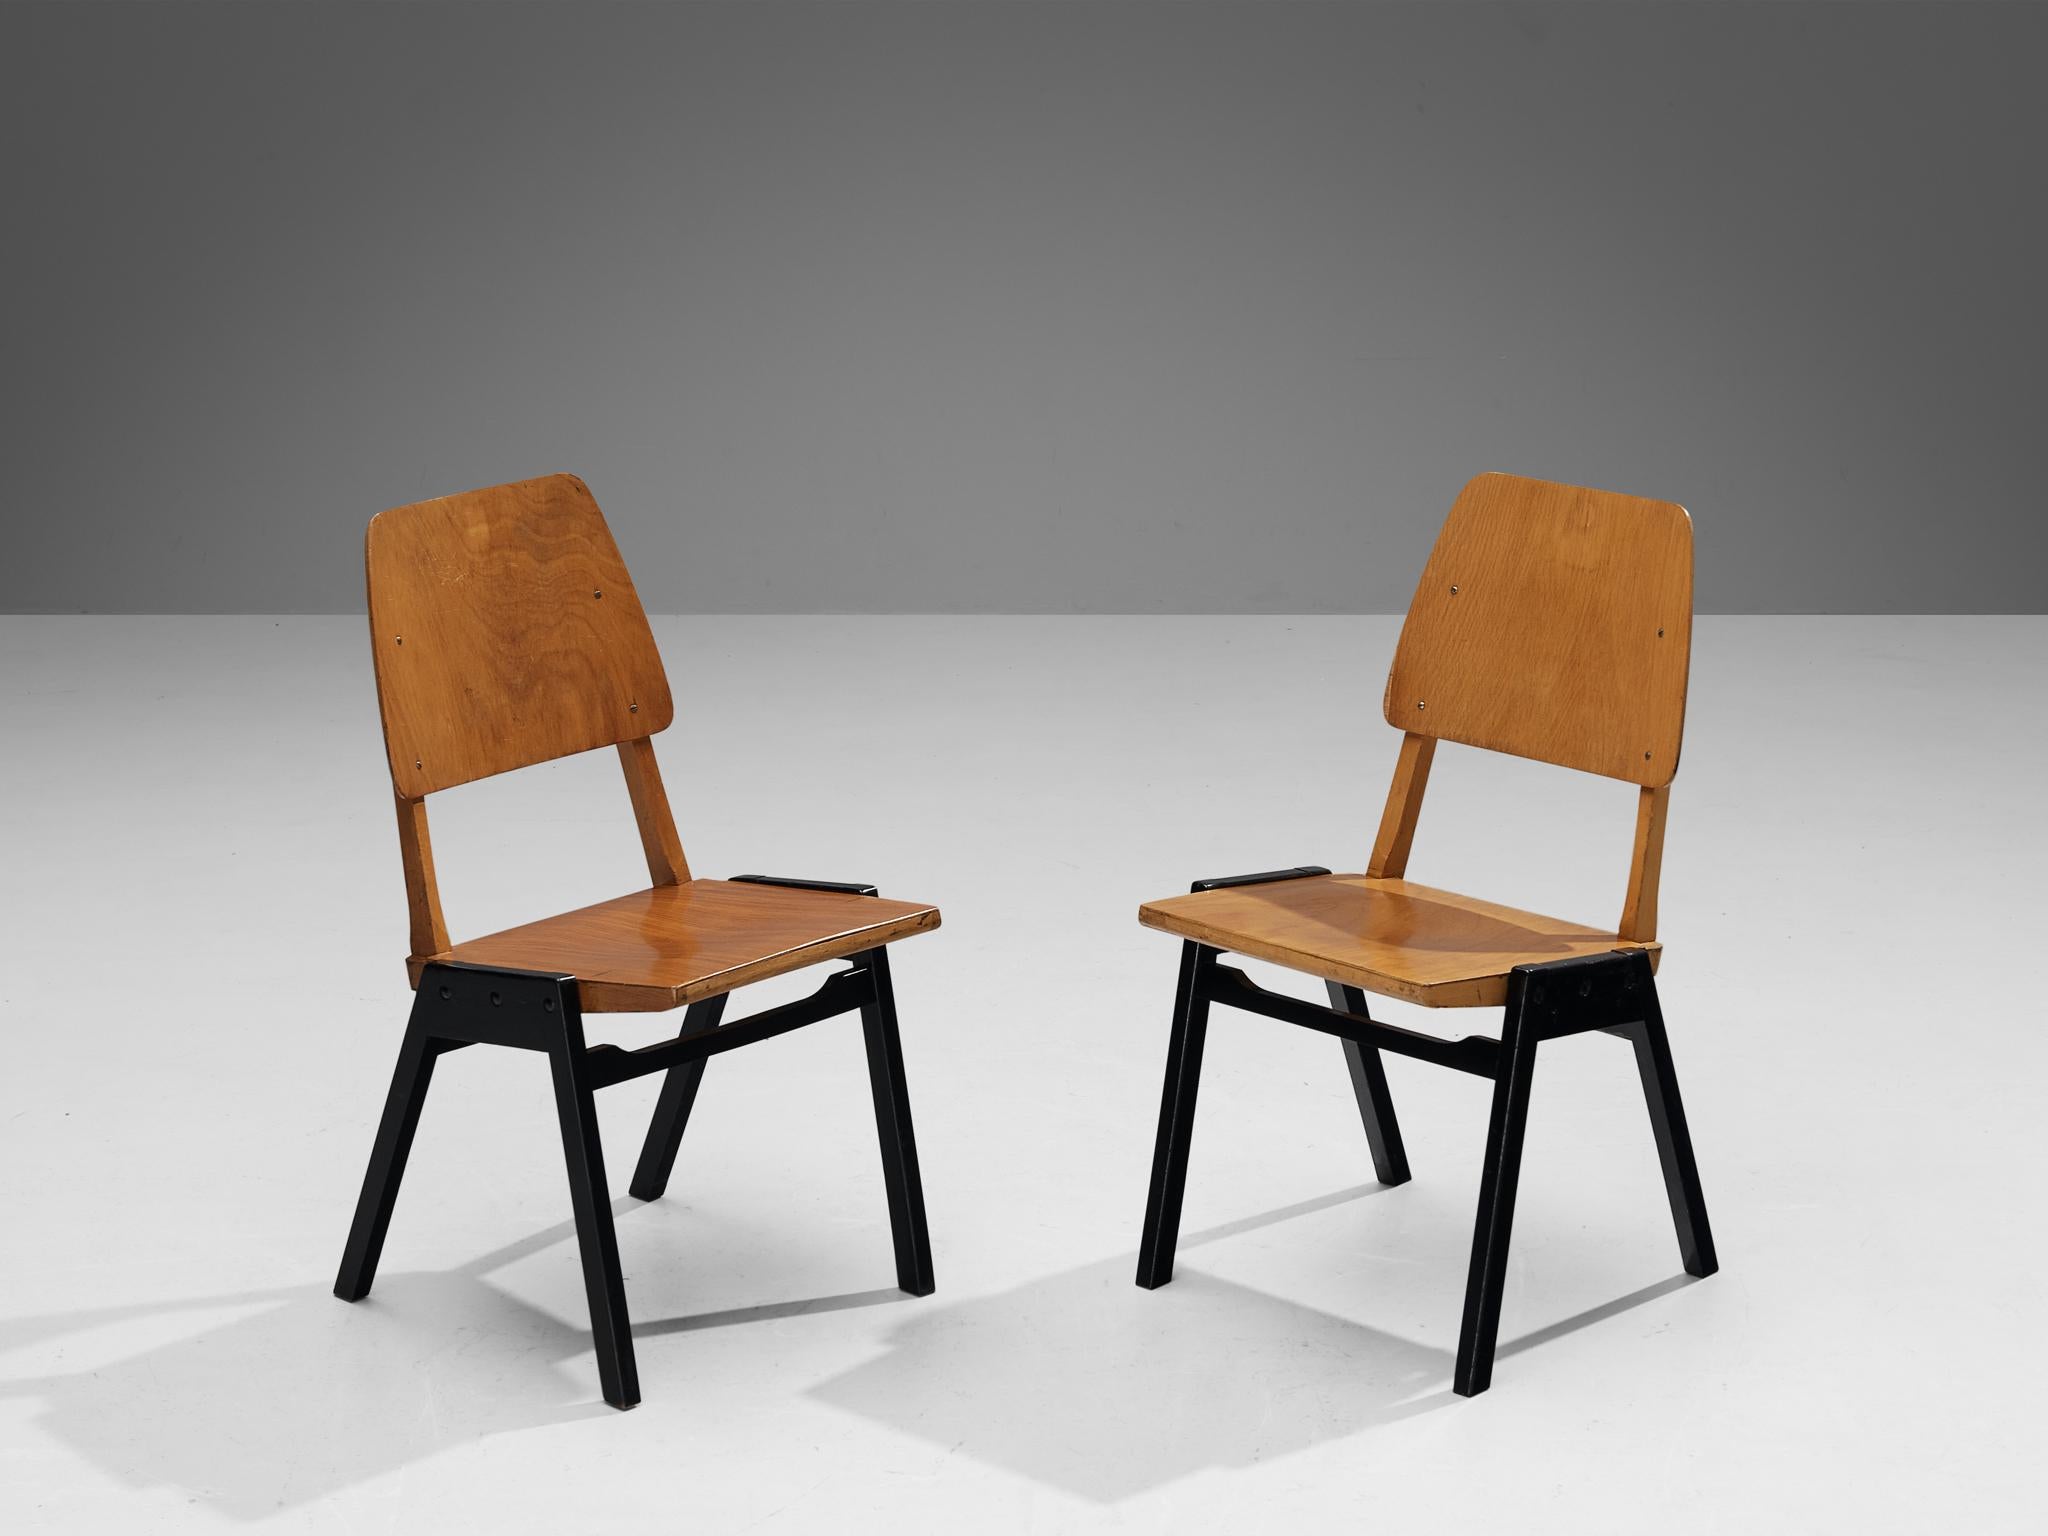 Roland Rainer, Esszimmerstühle, Buche gebeizt, Buche lackiert, Österreich, 1950er Jahre

Diese Esszimmerstühle haben ein minimalistisches Design, das sich durch eine offene Bauweise mit Betonung auf konstruktive Details auszeichnet. Die Kombination